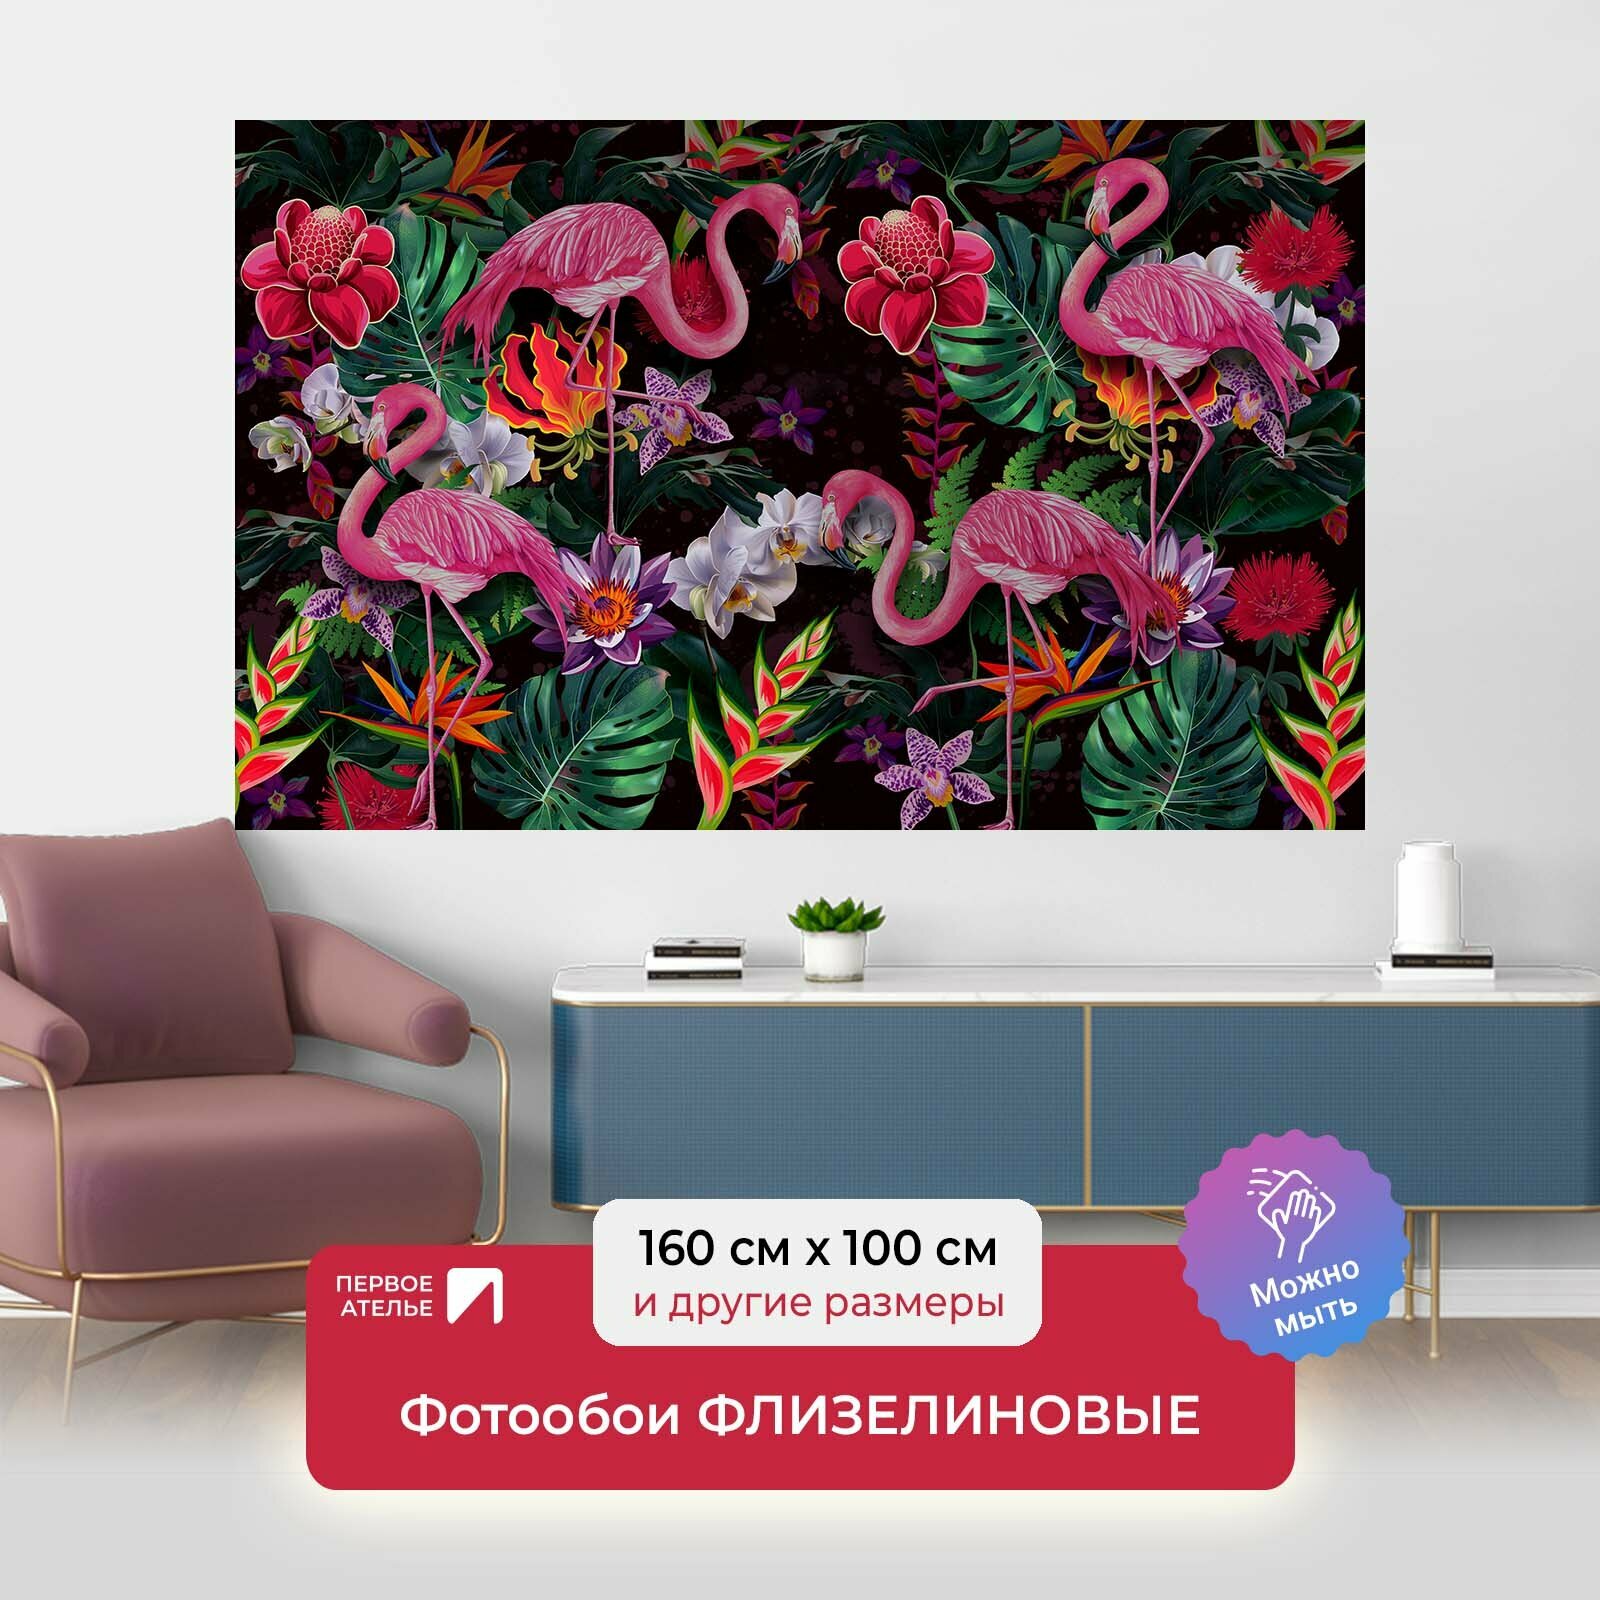 Фотообои на стену первое ателье "Диковинные фламинго с экзотическими цветами" 160х100 см (ШхВ), флизелиновые Premium